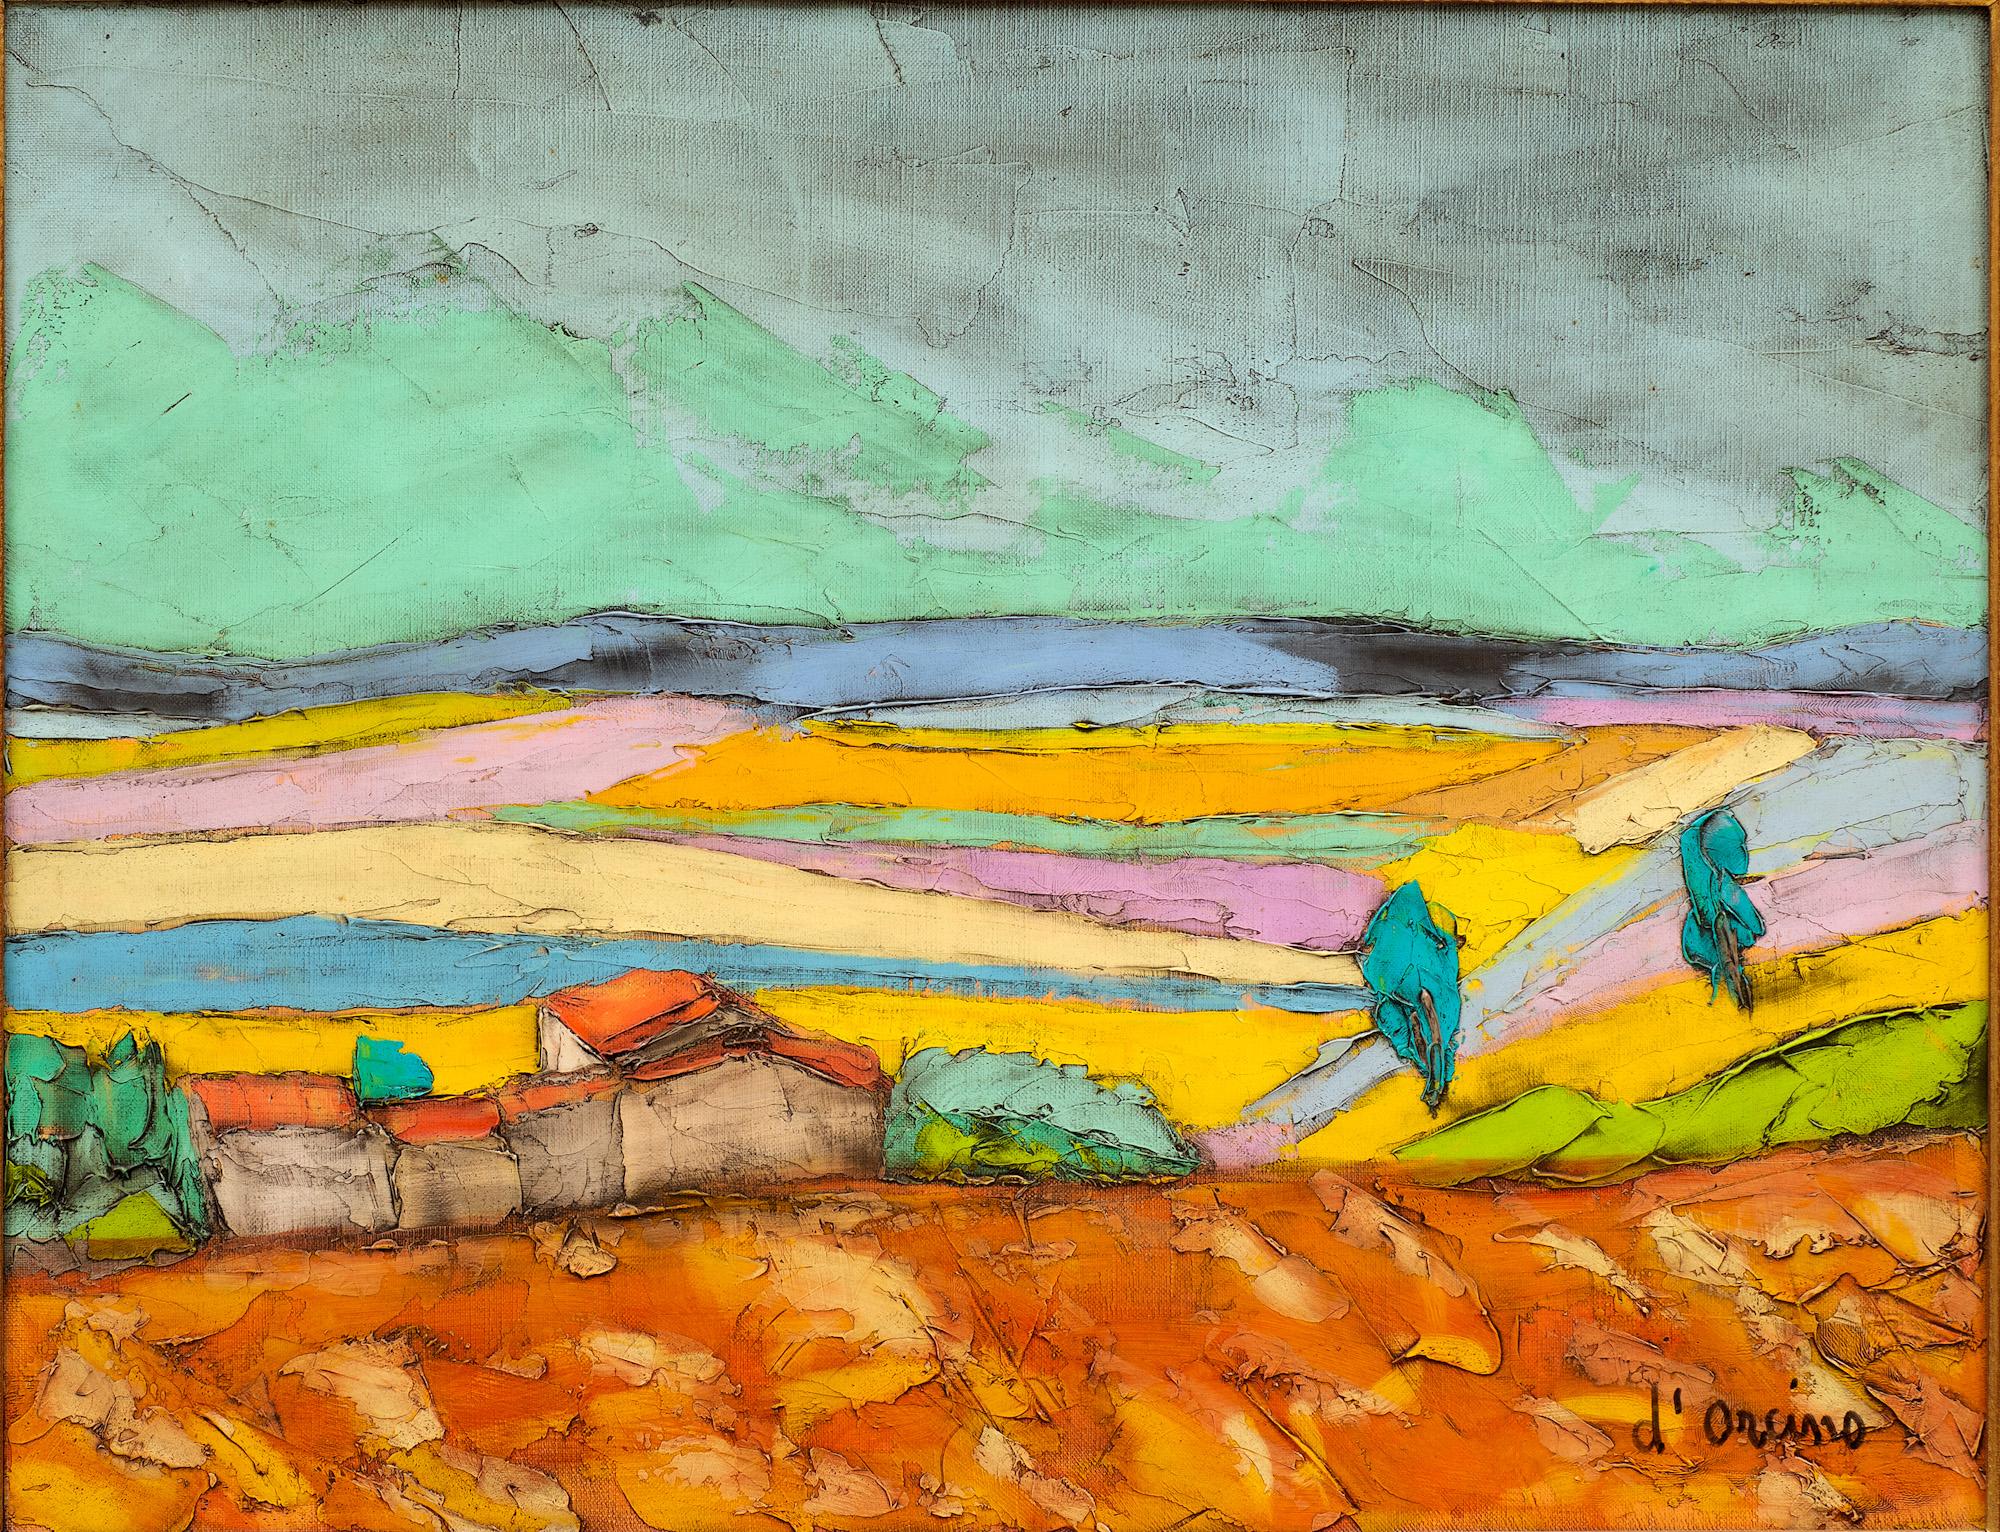 « Le mouton dans les collines » de Toussaint Ambrogiani d'Orcino (1913-1986) - Expressionnisme abstrait Painting par Toussaint Ambrogiani D'Orcino 